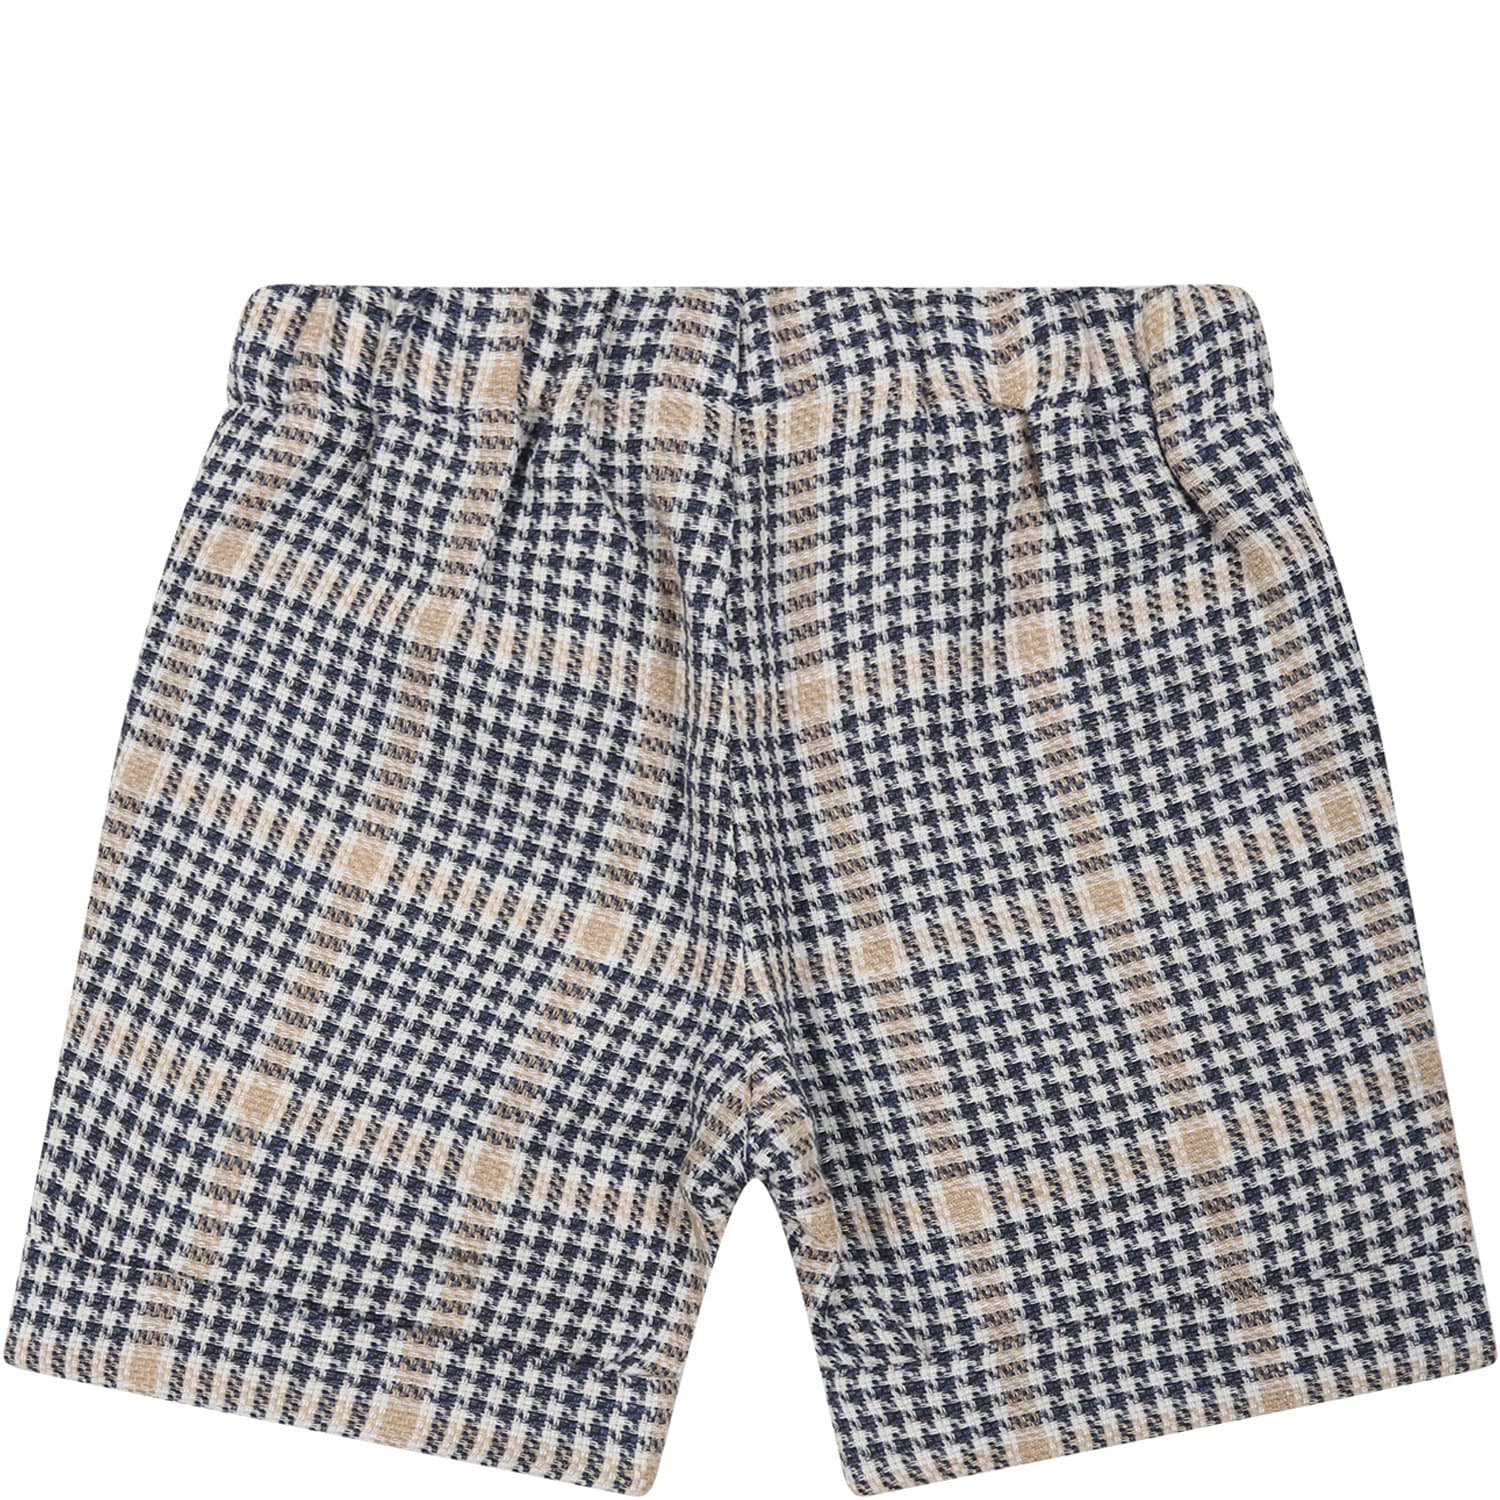 Shop La Stupenderia Multicolor Shorts For Baby Boy